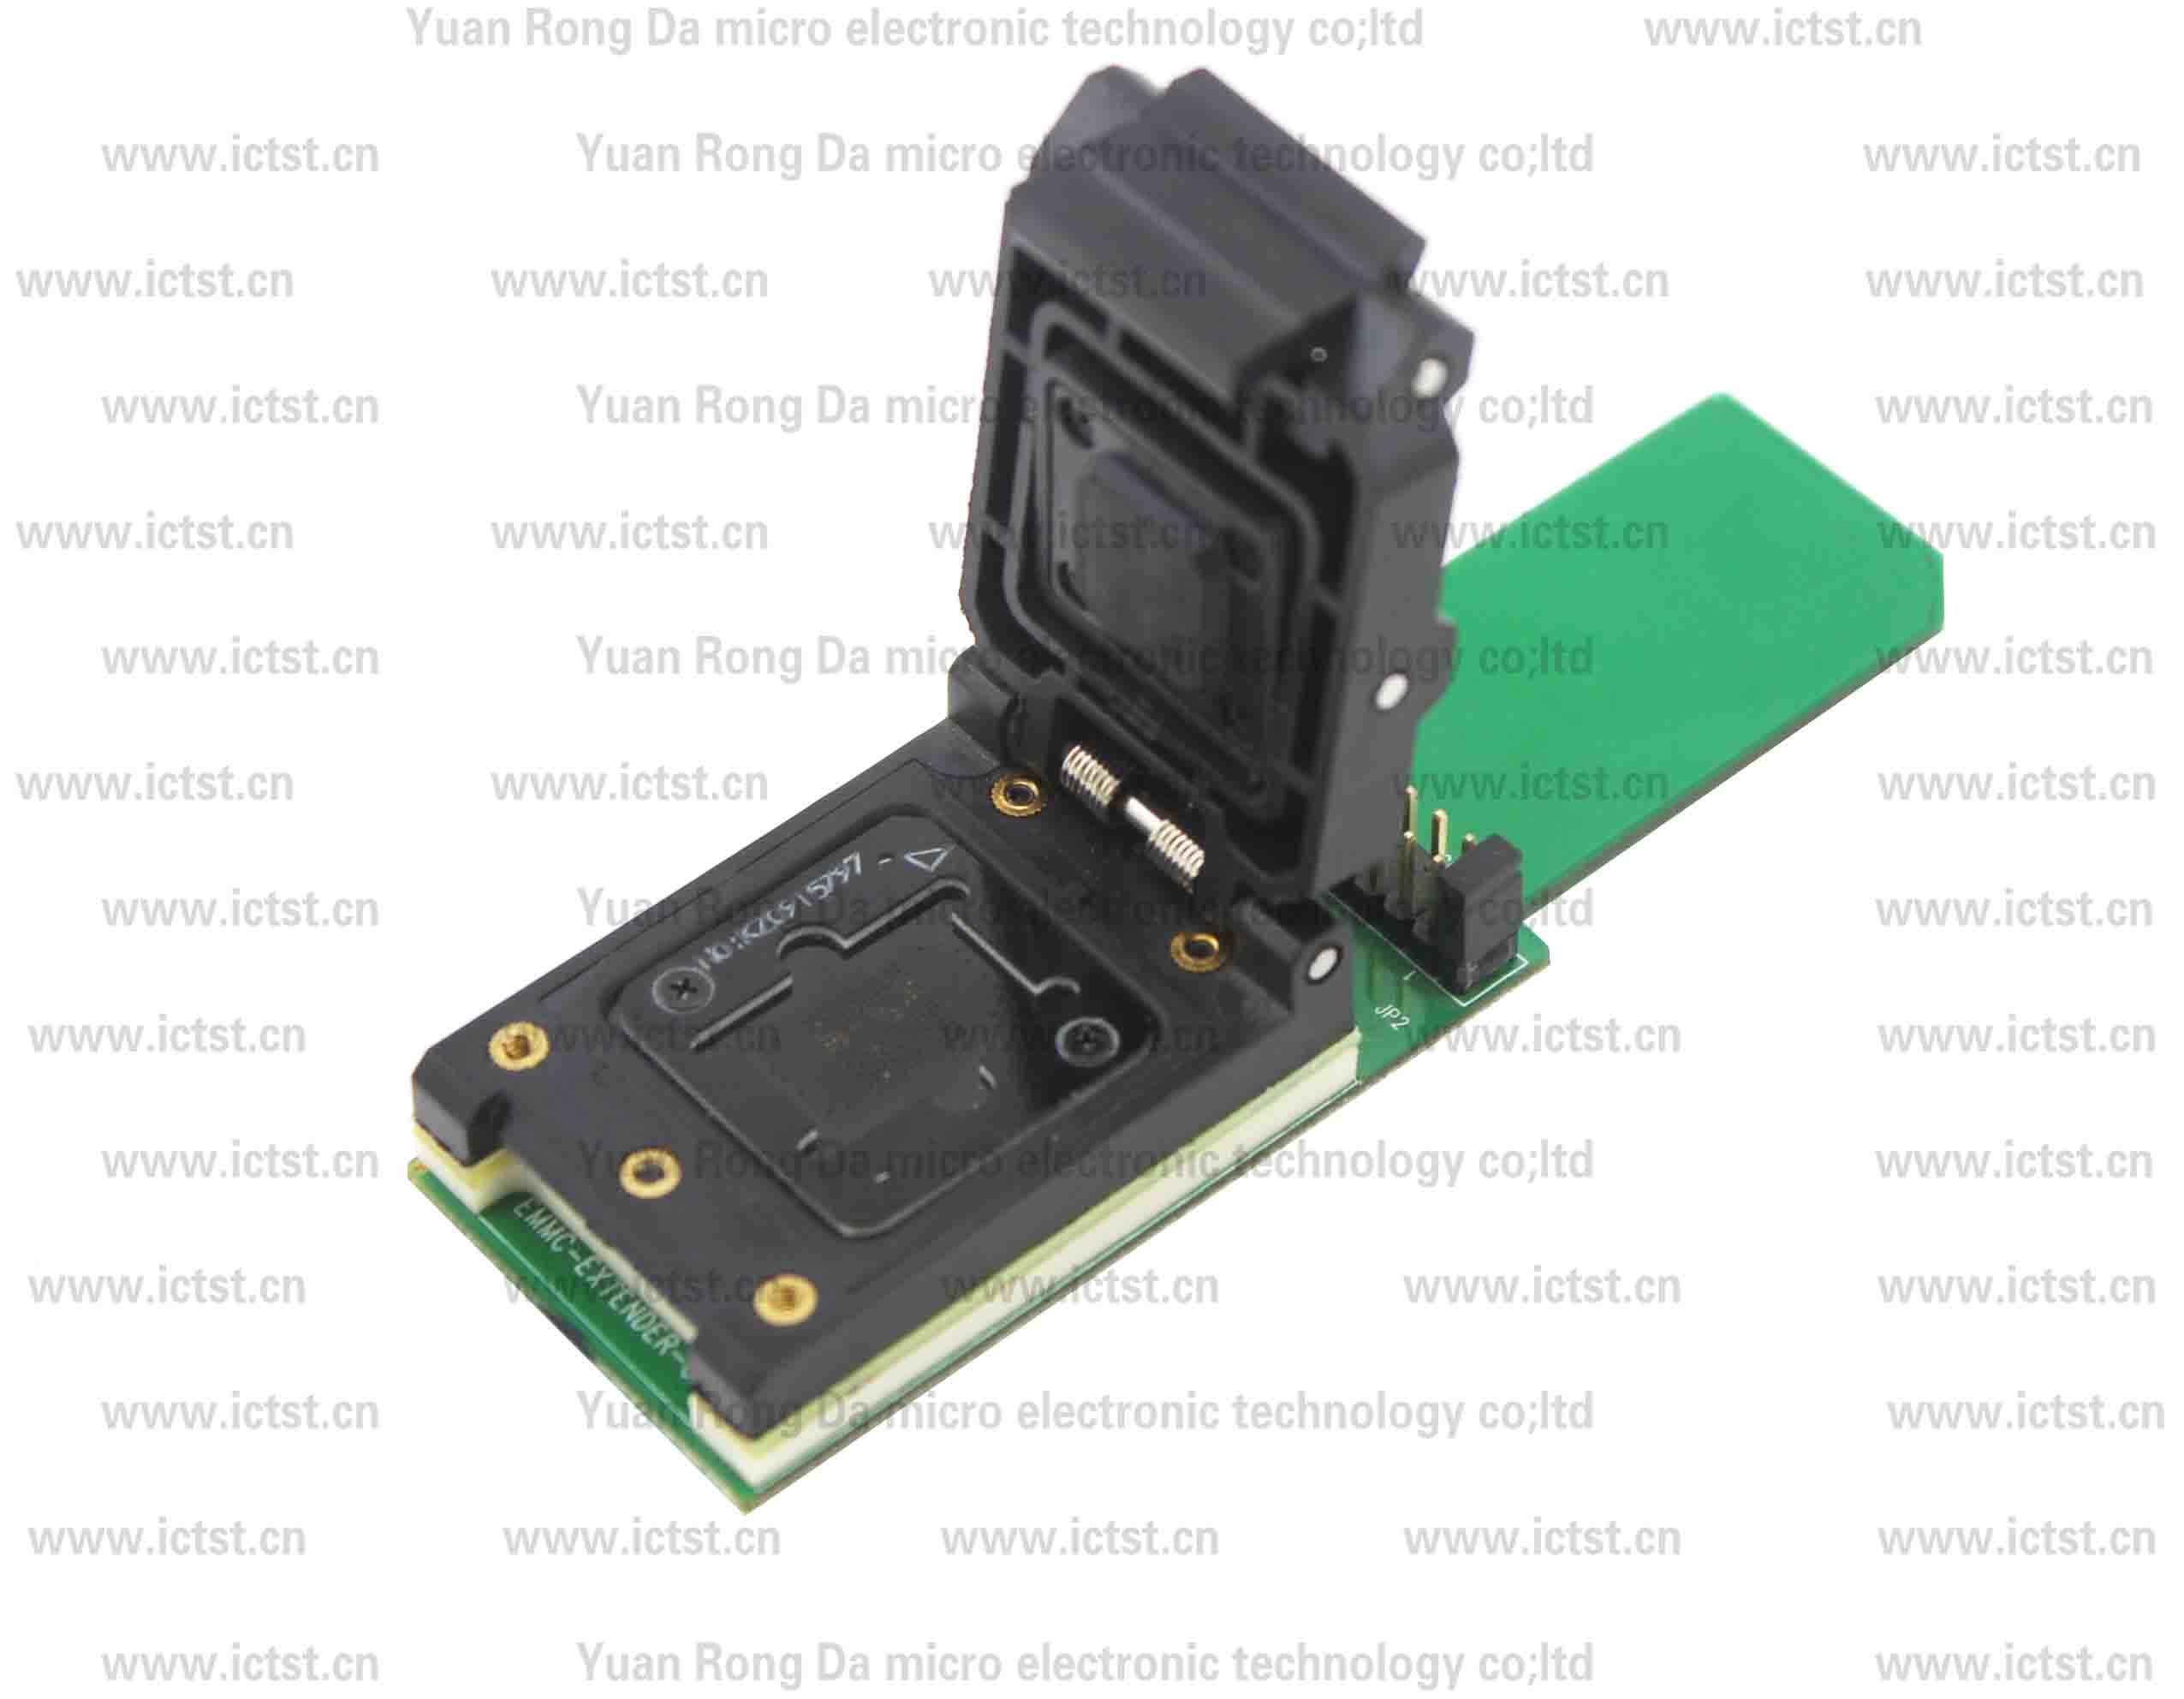 -EMMC SD TEST SOCKET test socket  SD card tes